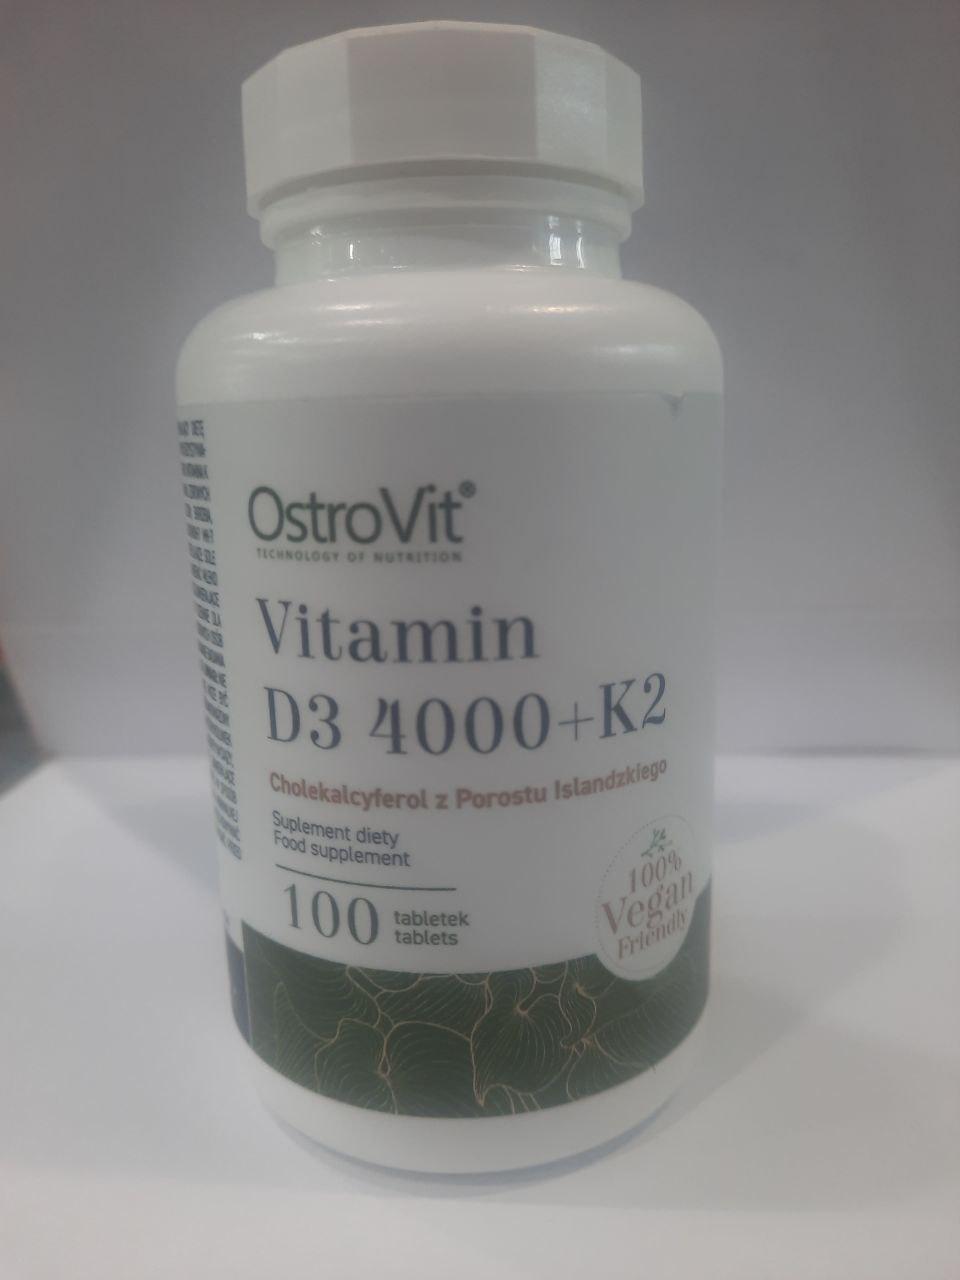 Вітамін D3 4000 + K2 VEGAN 100 таблеток Ostrovit